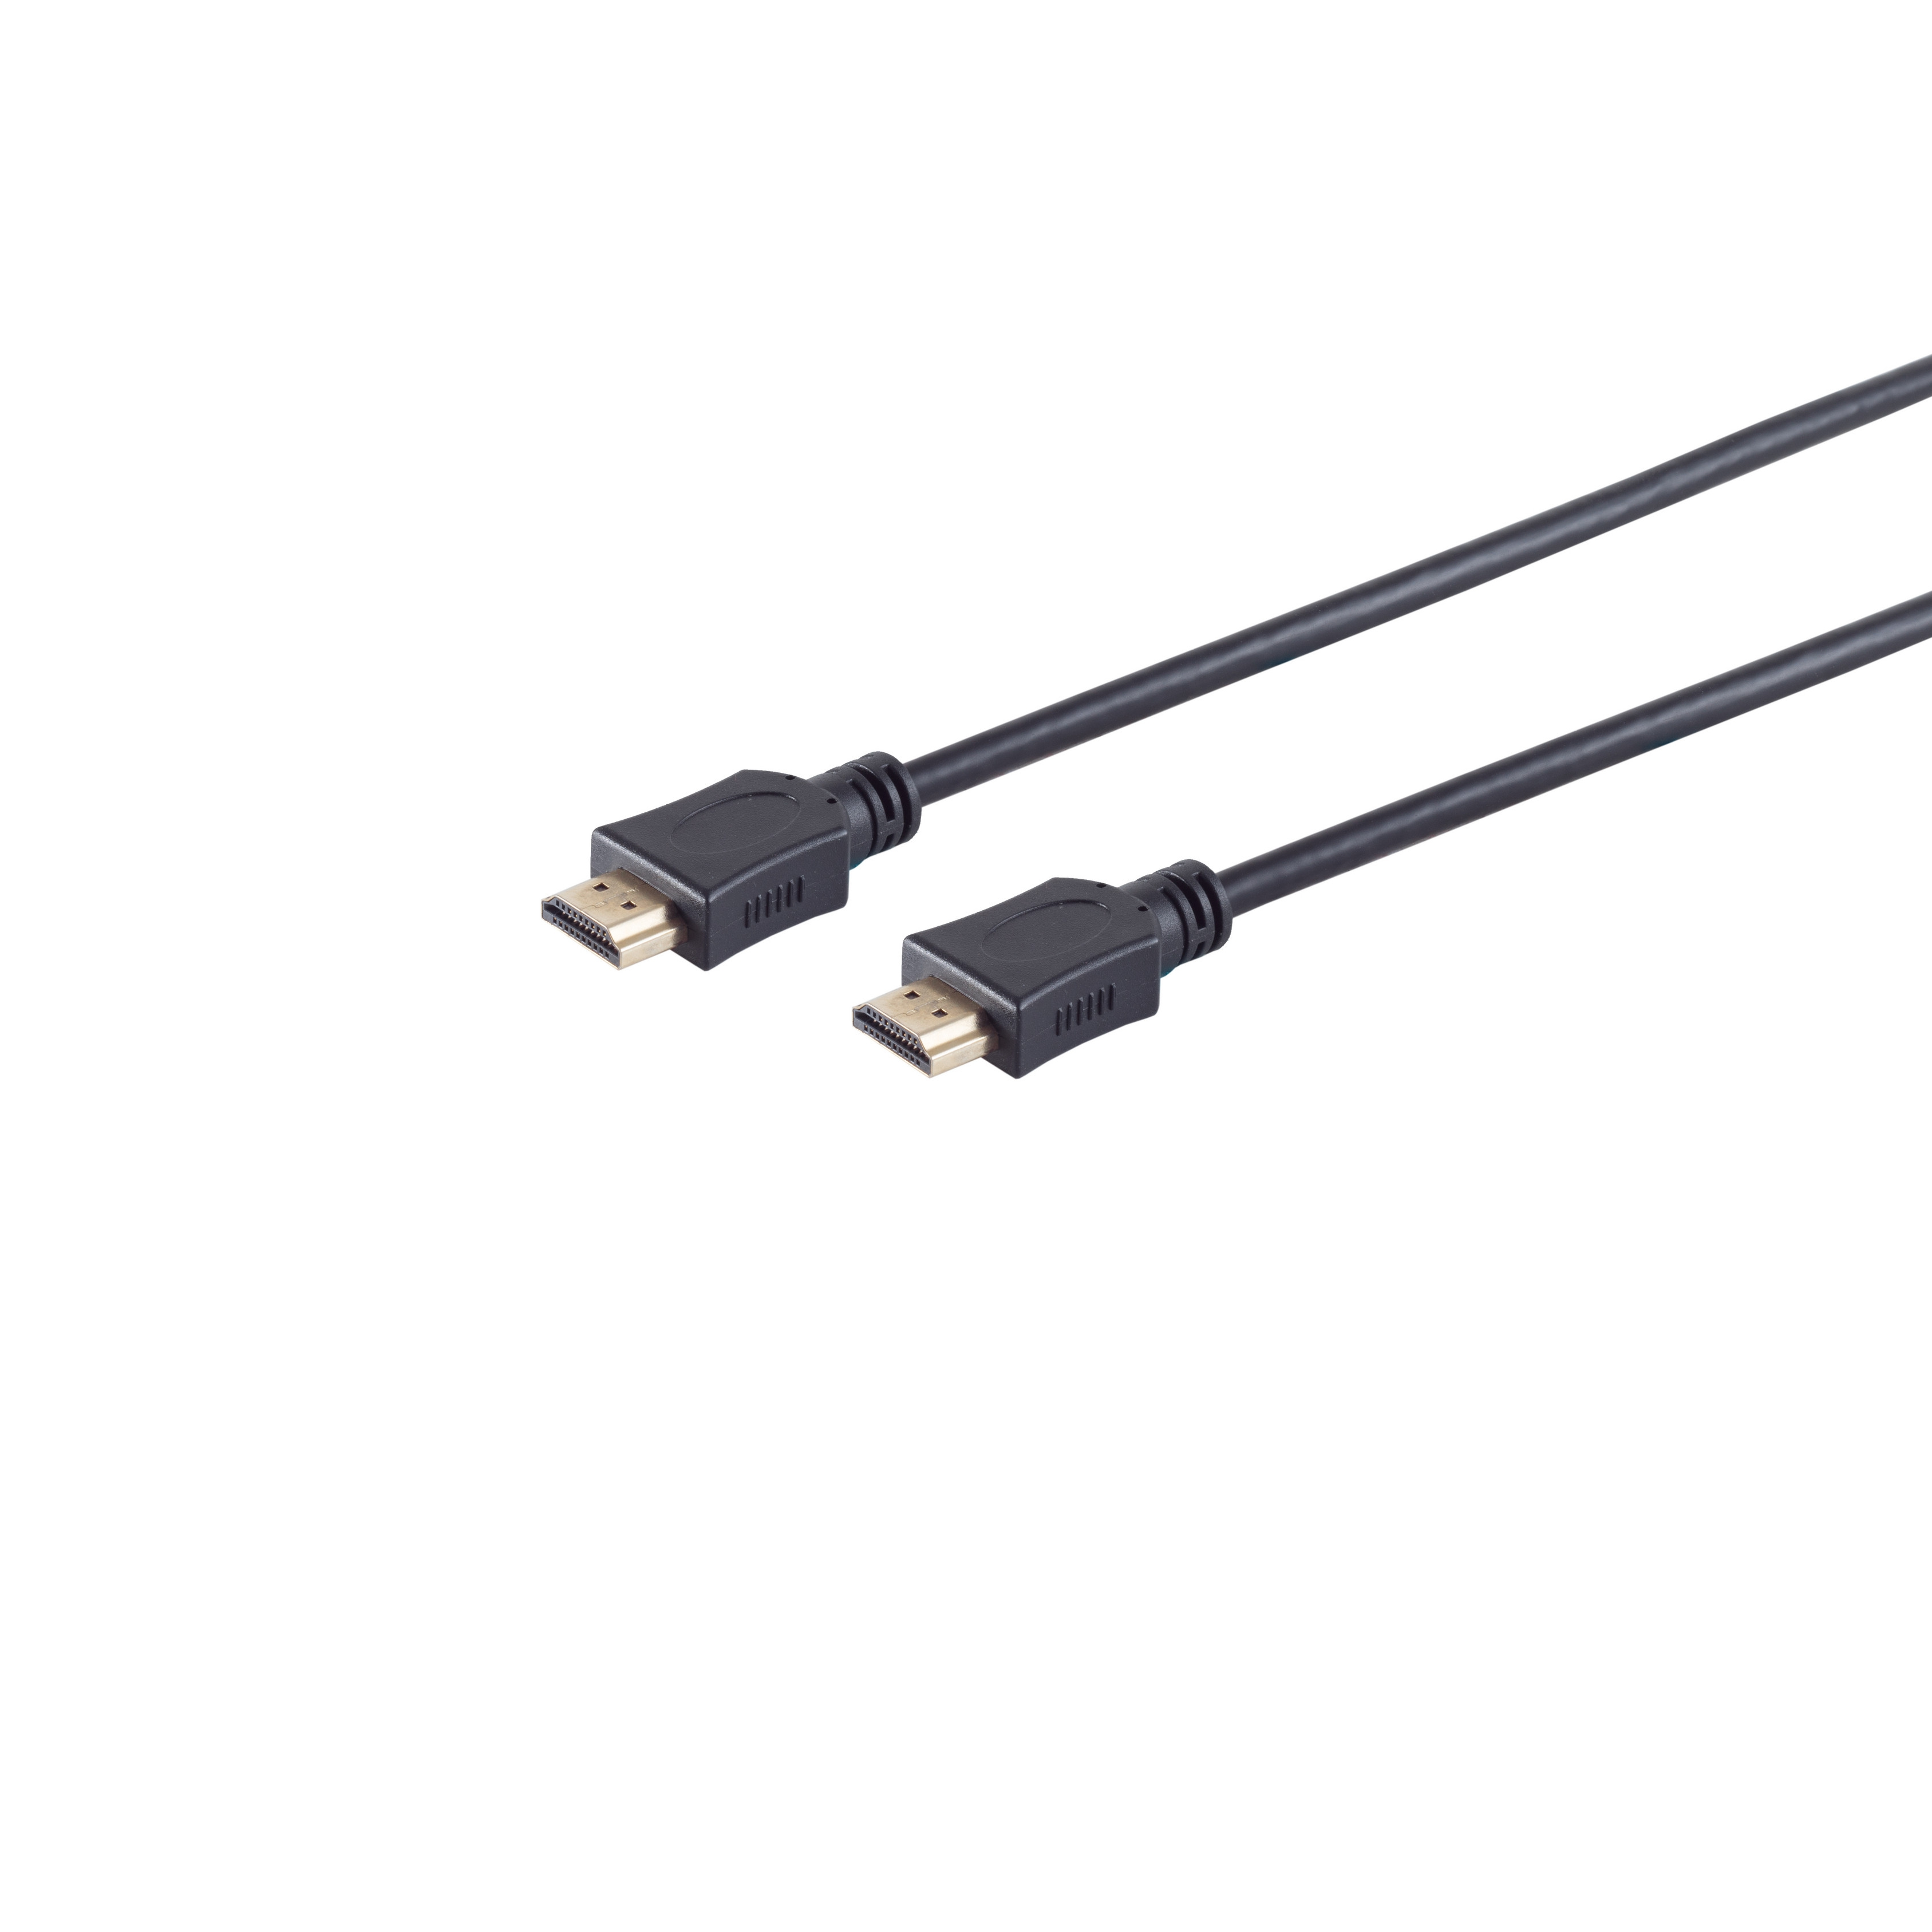 MAXIMUM Kabel CONNECTIVITY auf A-Stecker A-Stecker verg, HDMI S/CONN 1,5m HDMI HDMI OD6mm